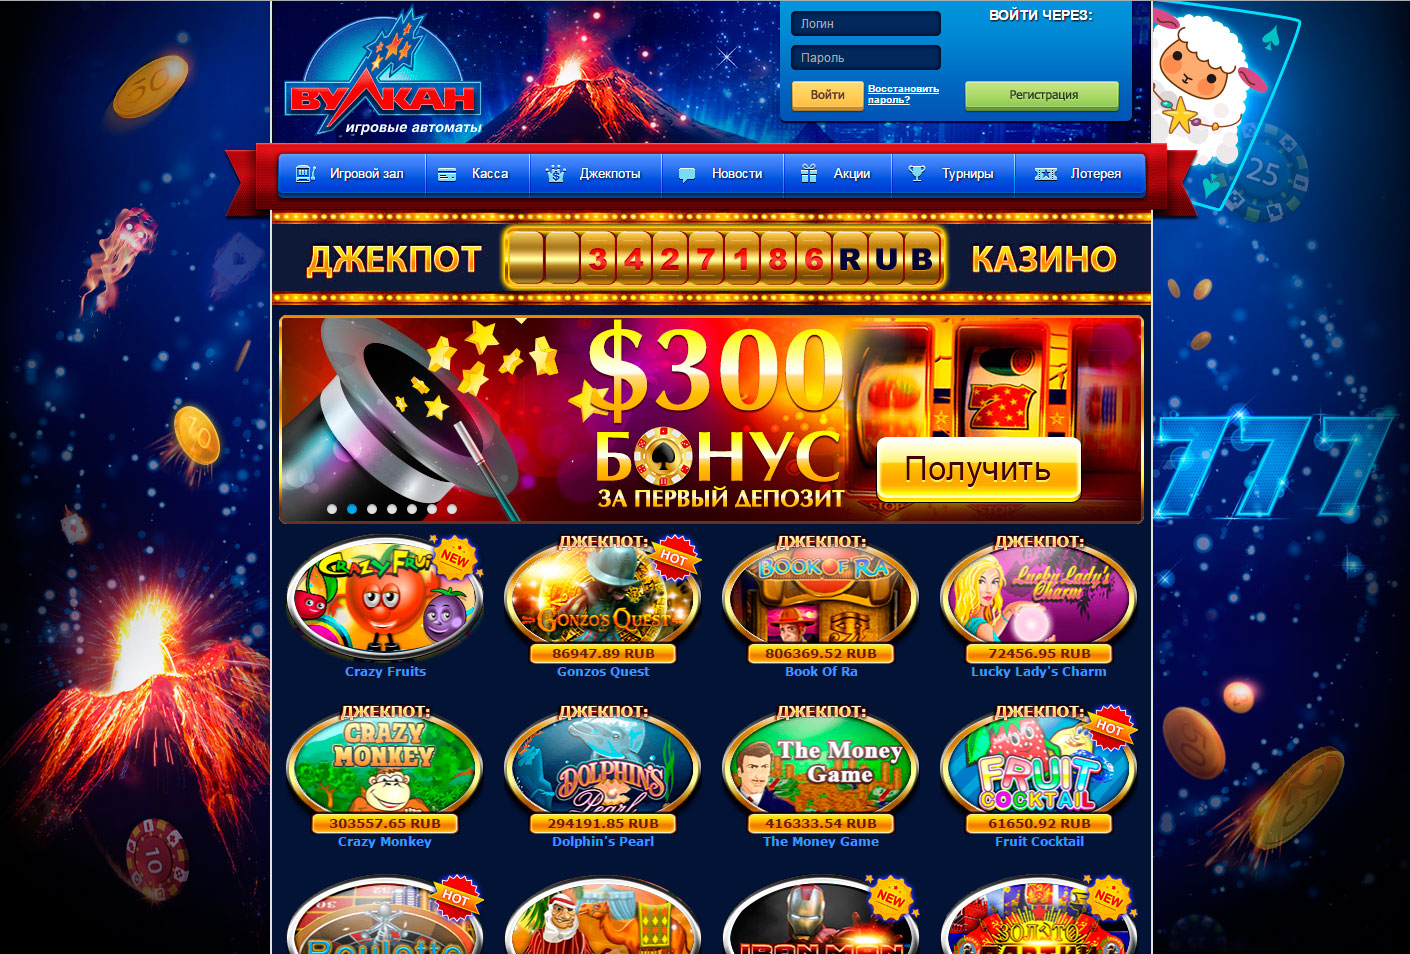 Игровые автоматы Вулкан казино: бонусы и особенности